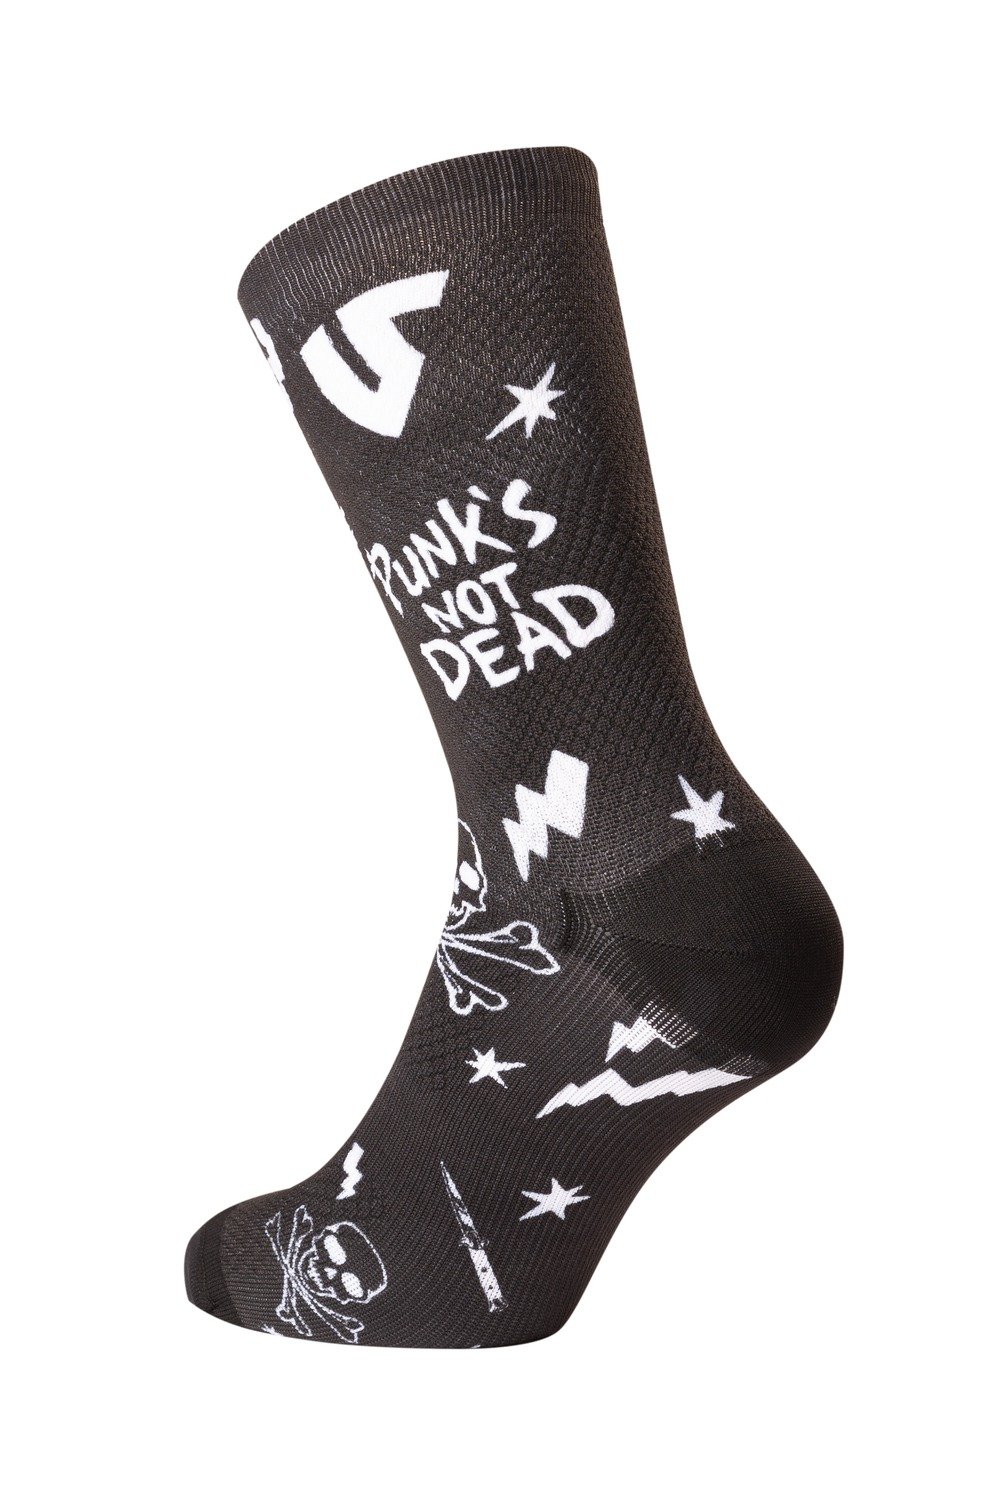 Obrázek produktu ponožky PUNK'S NOT DEAD, UNDERSHIELD (černá) US PND 702-BLACK